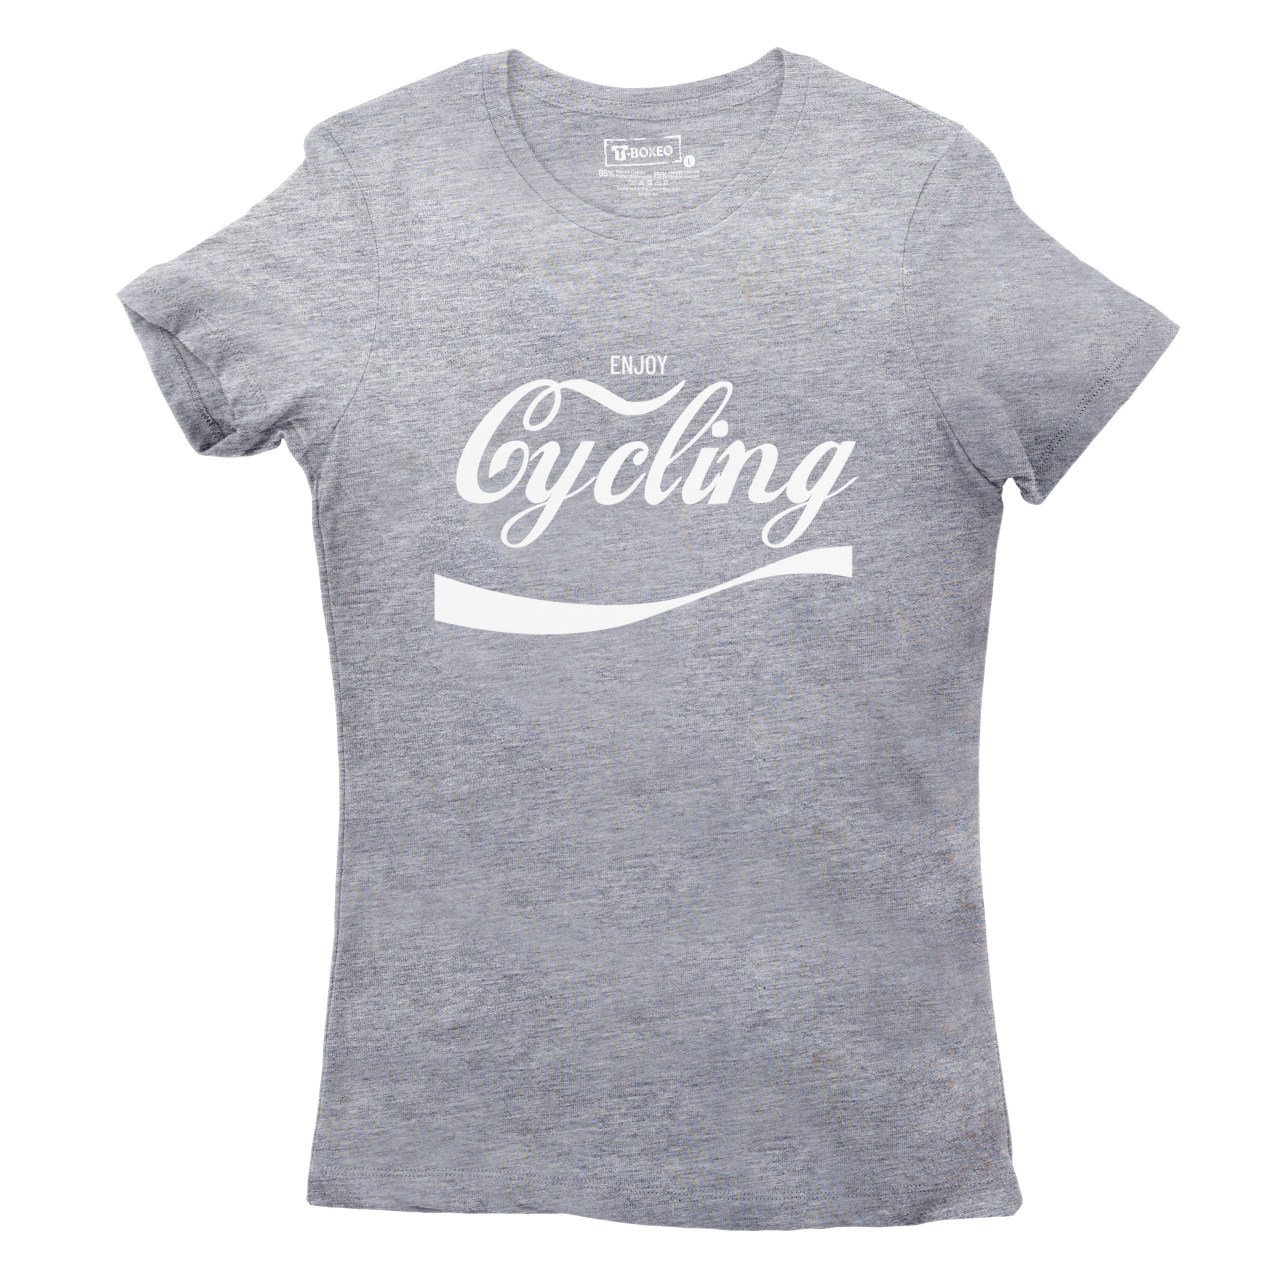 Dámské tričko s potiskem "Enjoy Cycling"